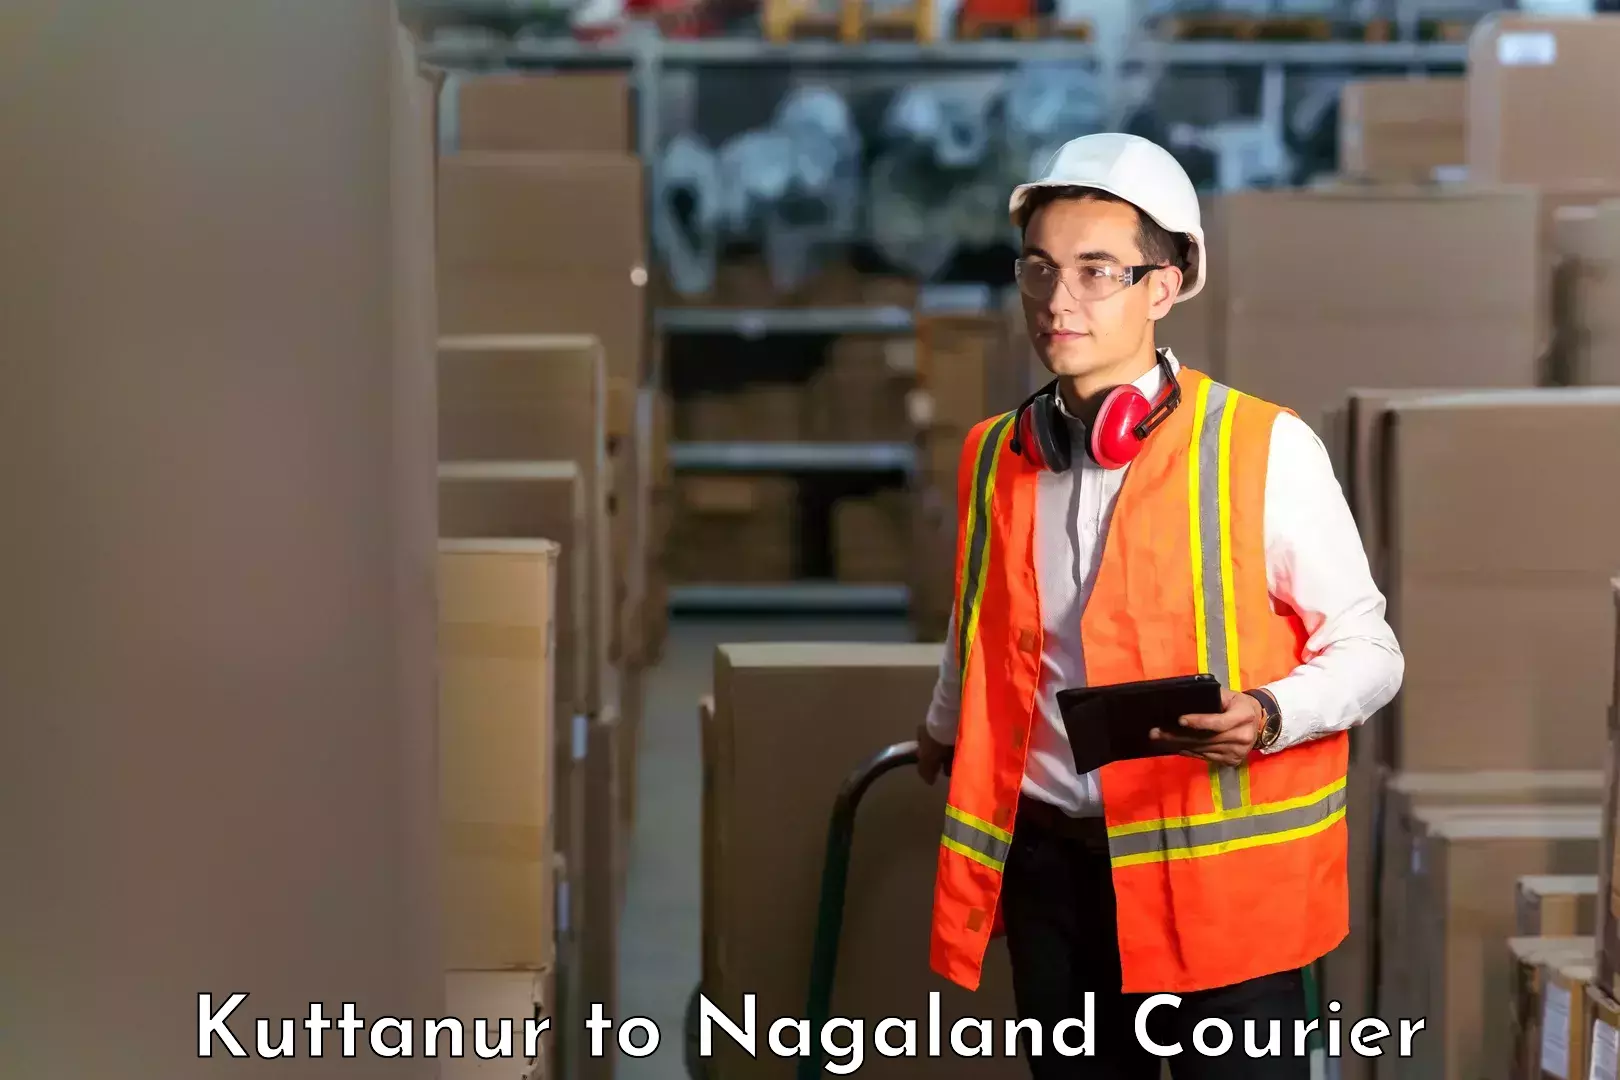 Affordable parcel service Kuttanur to NIT Nagaland